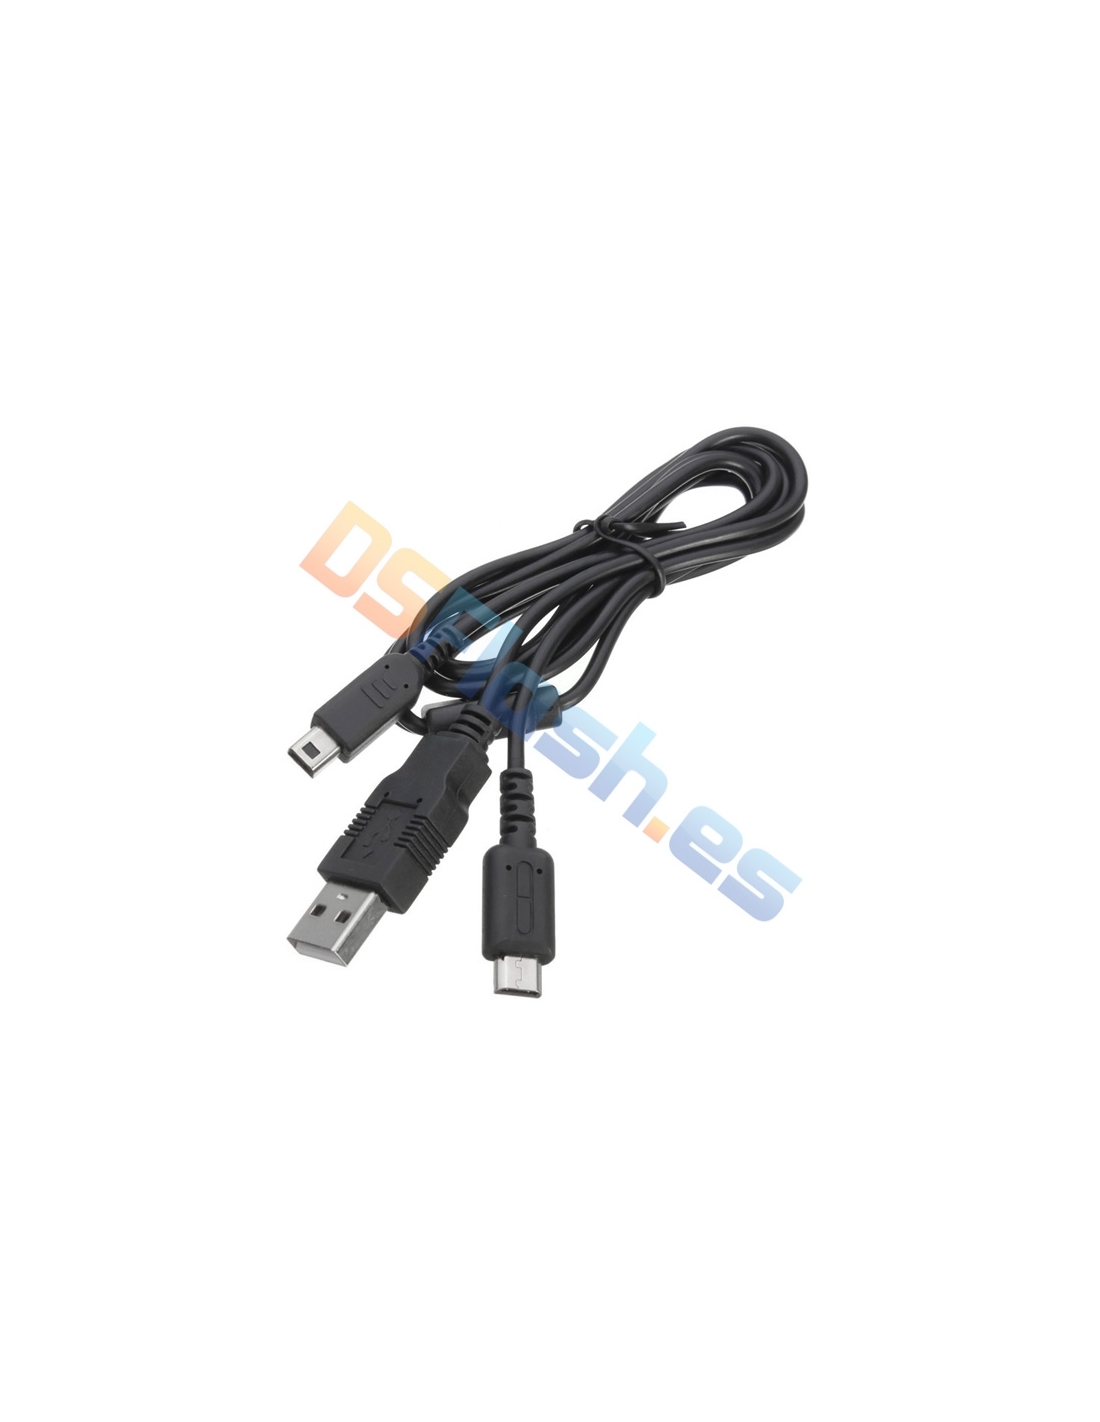 Robusto avaro Normal Cable USB Nintendo 3DS XL de Recarga - Accesorios Nintendo 3DS XL